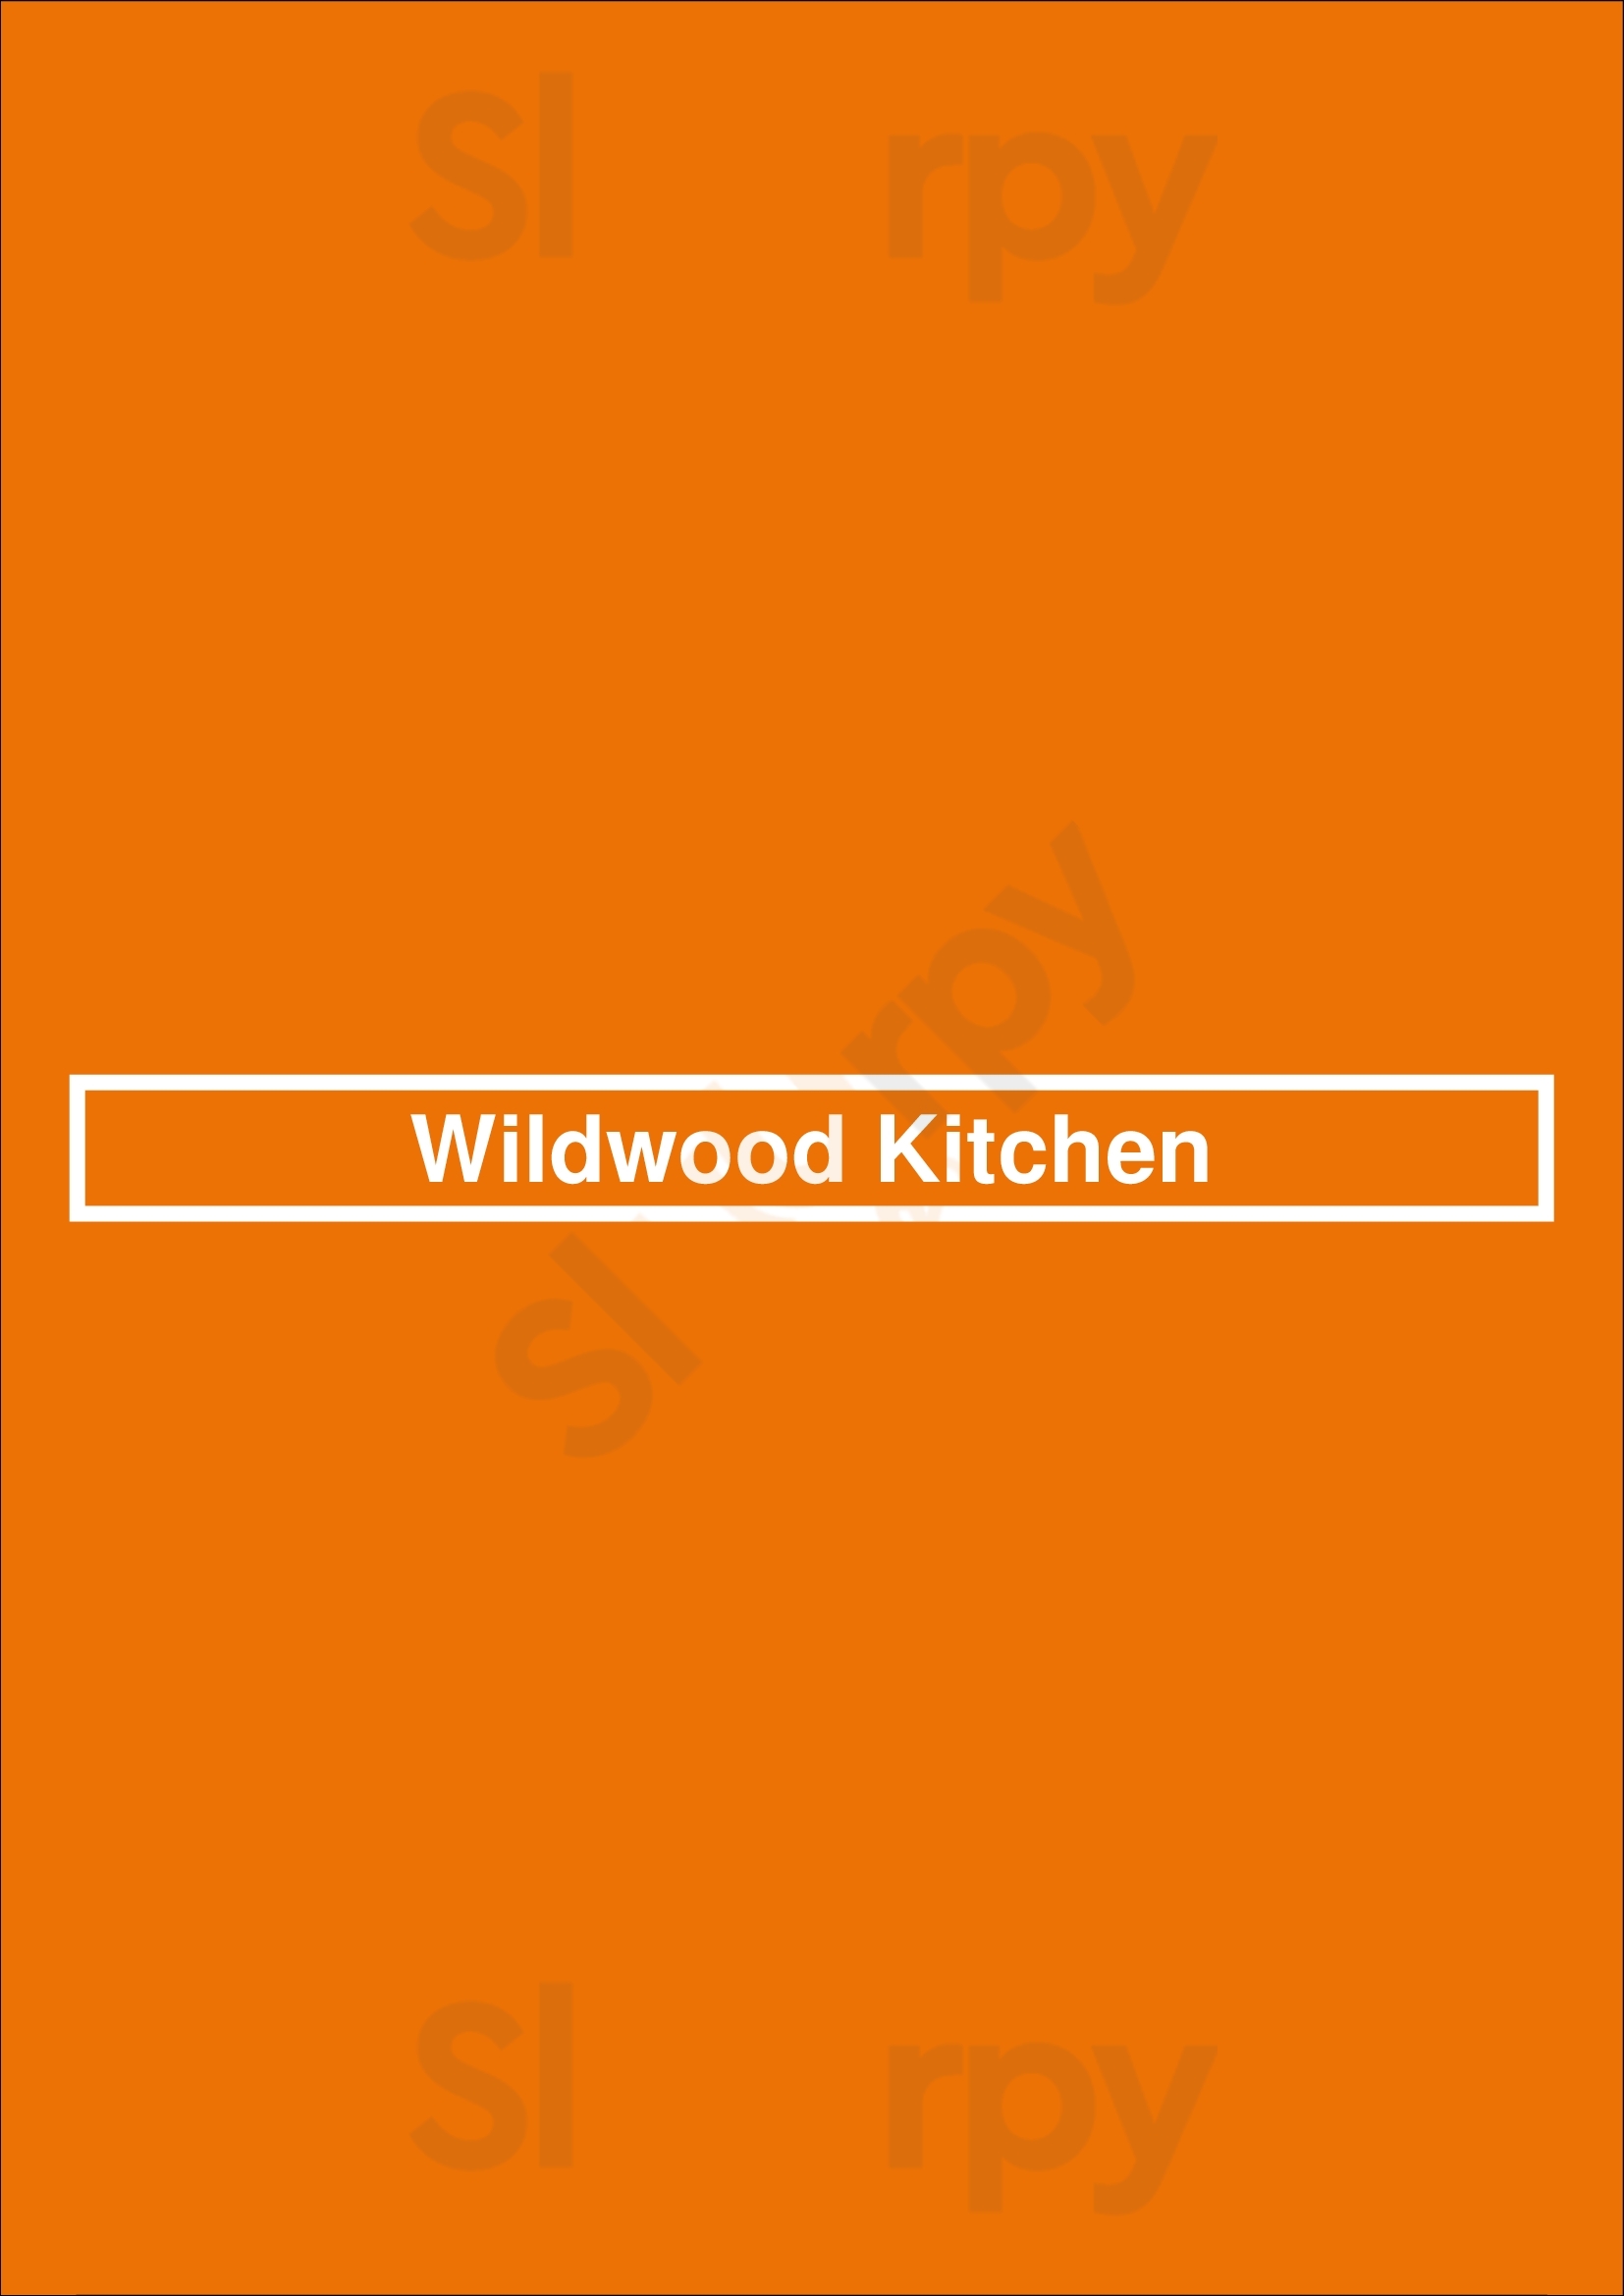 Wildwood Kitchen Telford Menu - 1